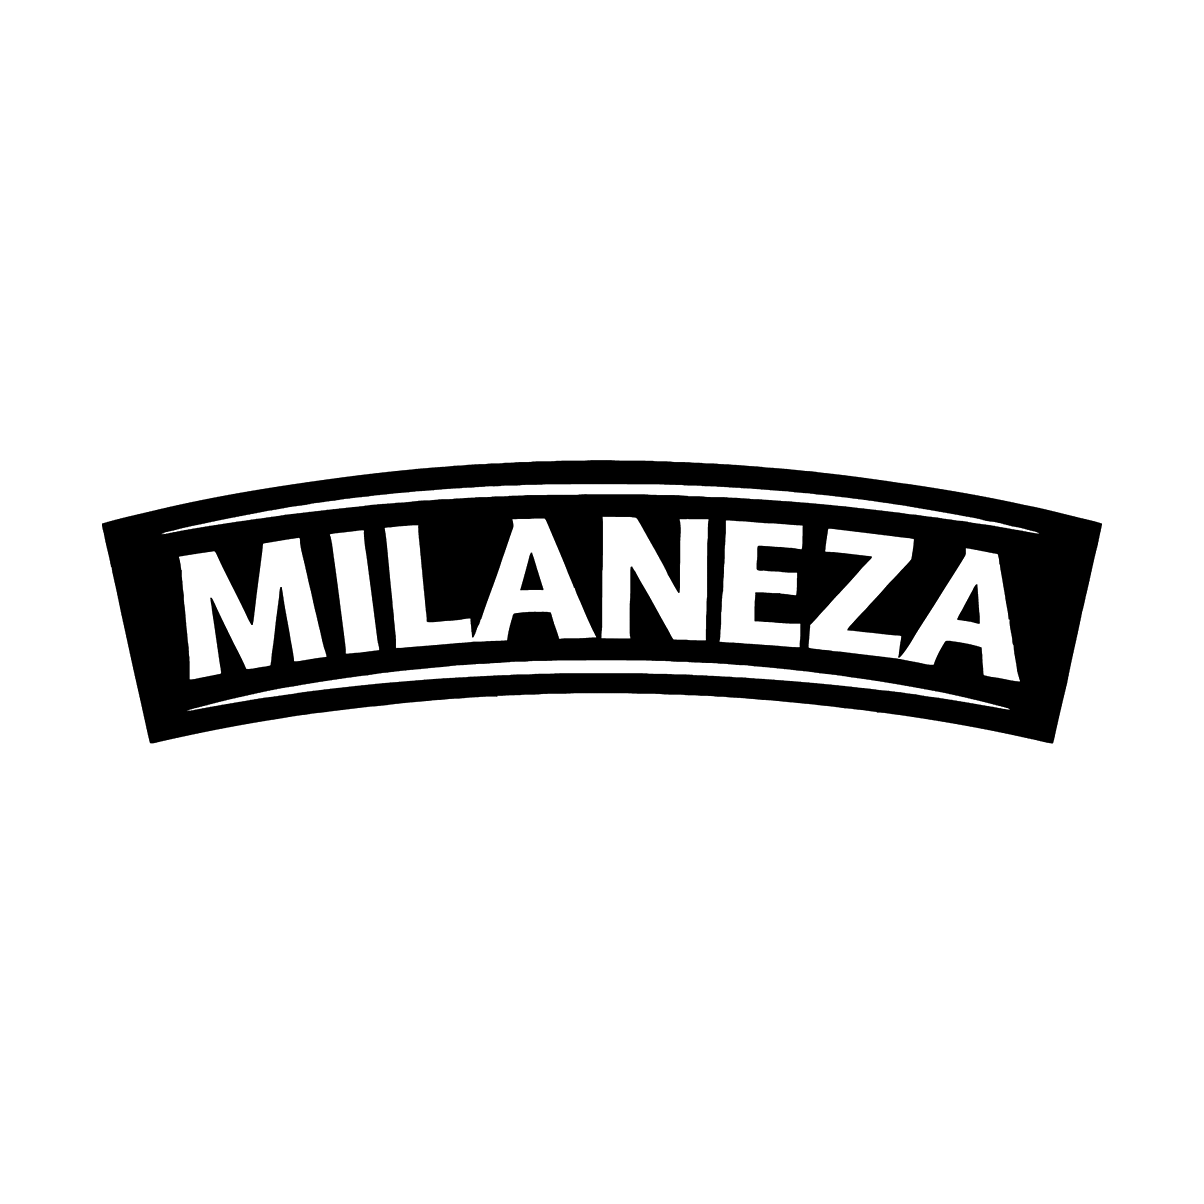 milaneza.png